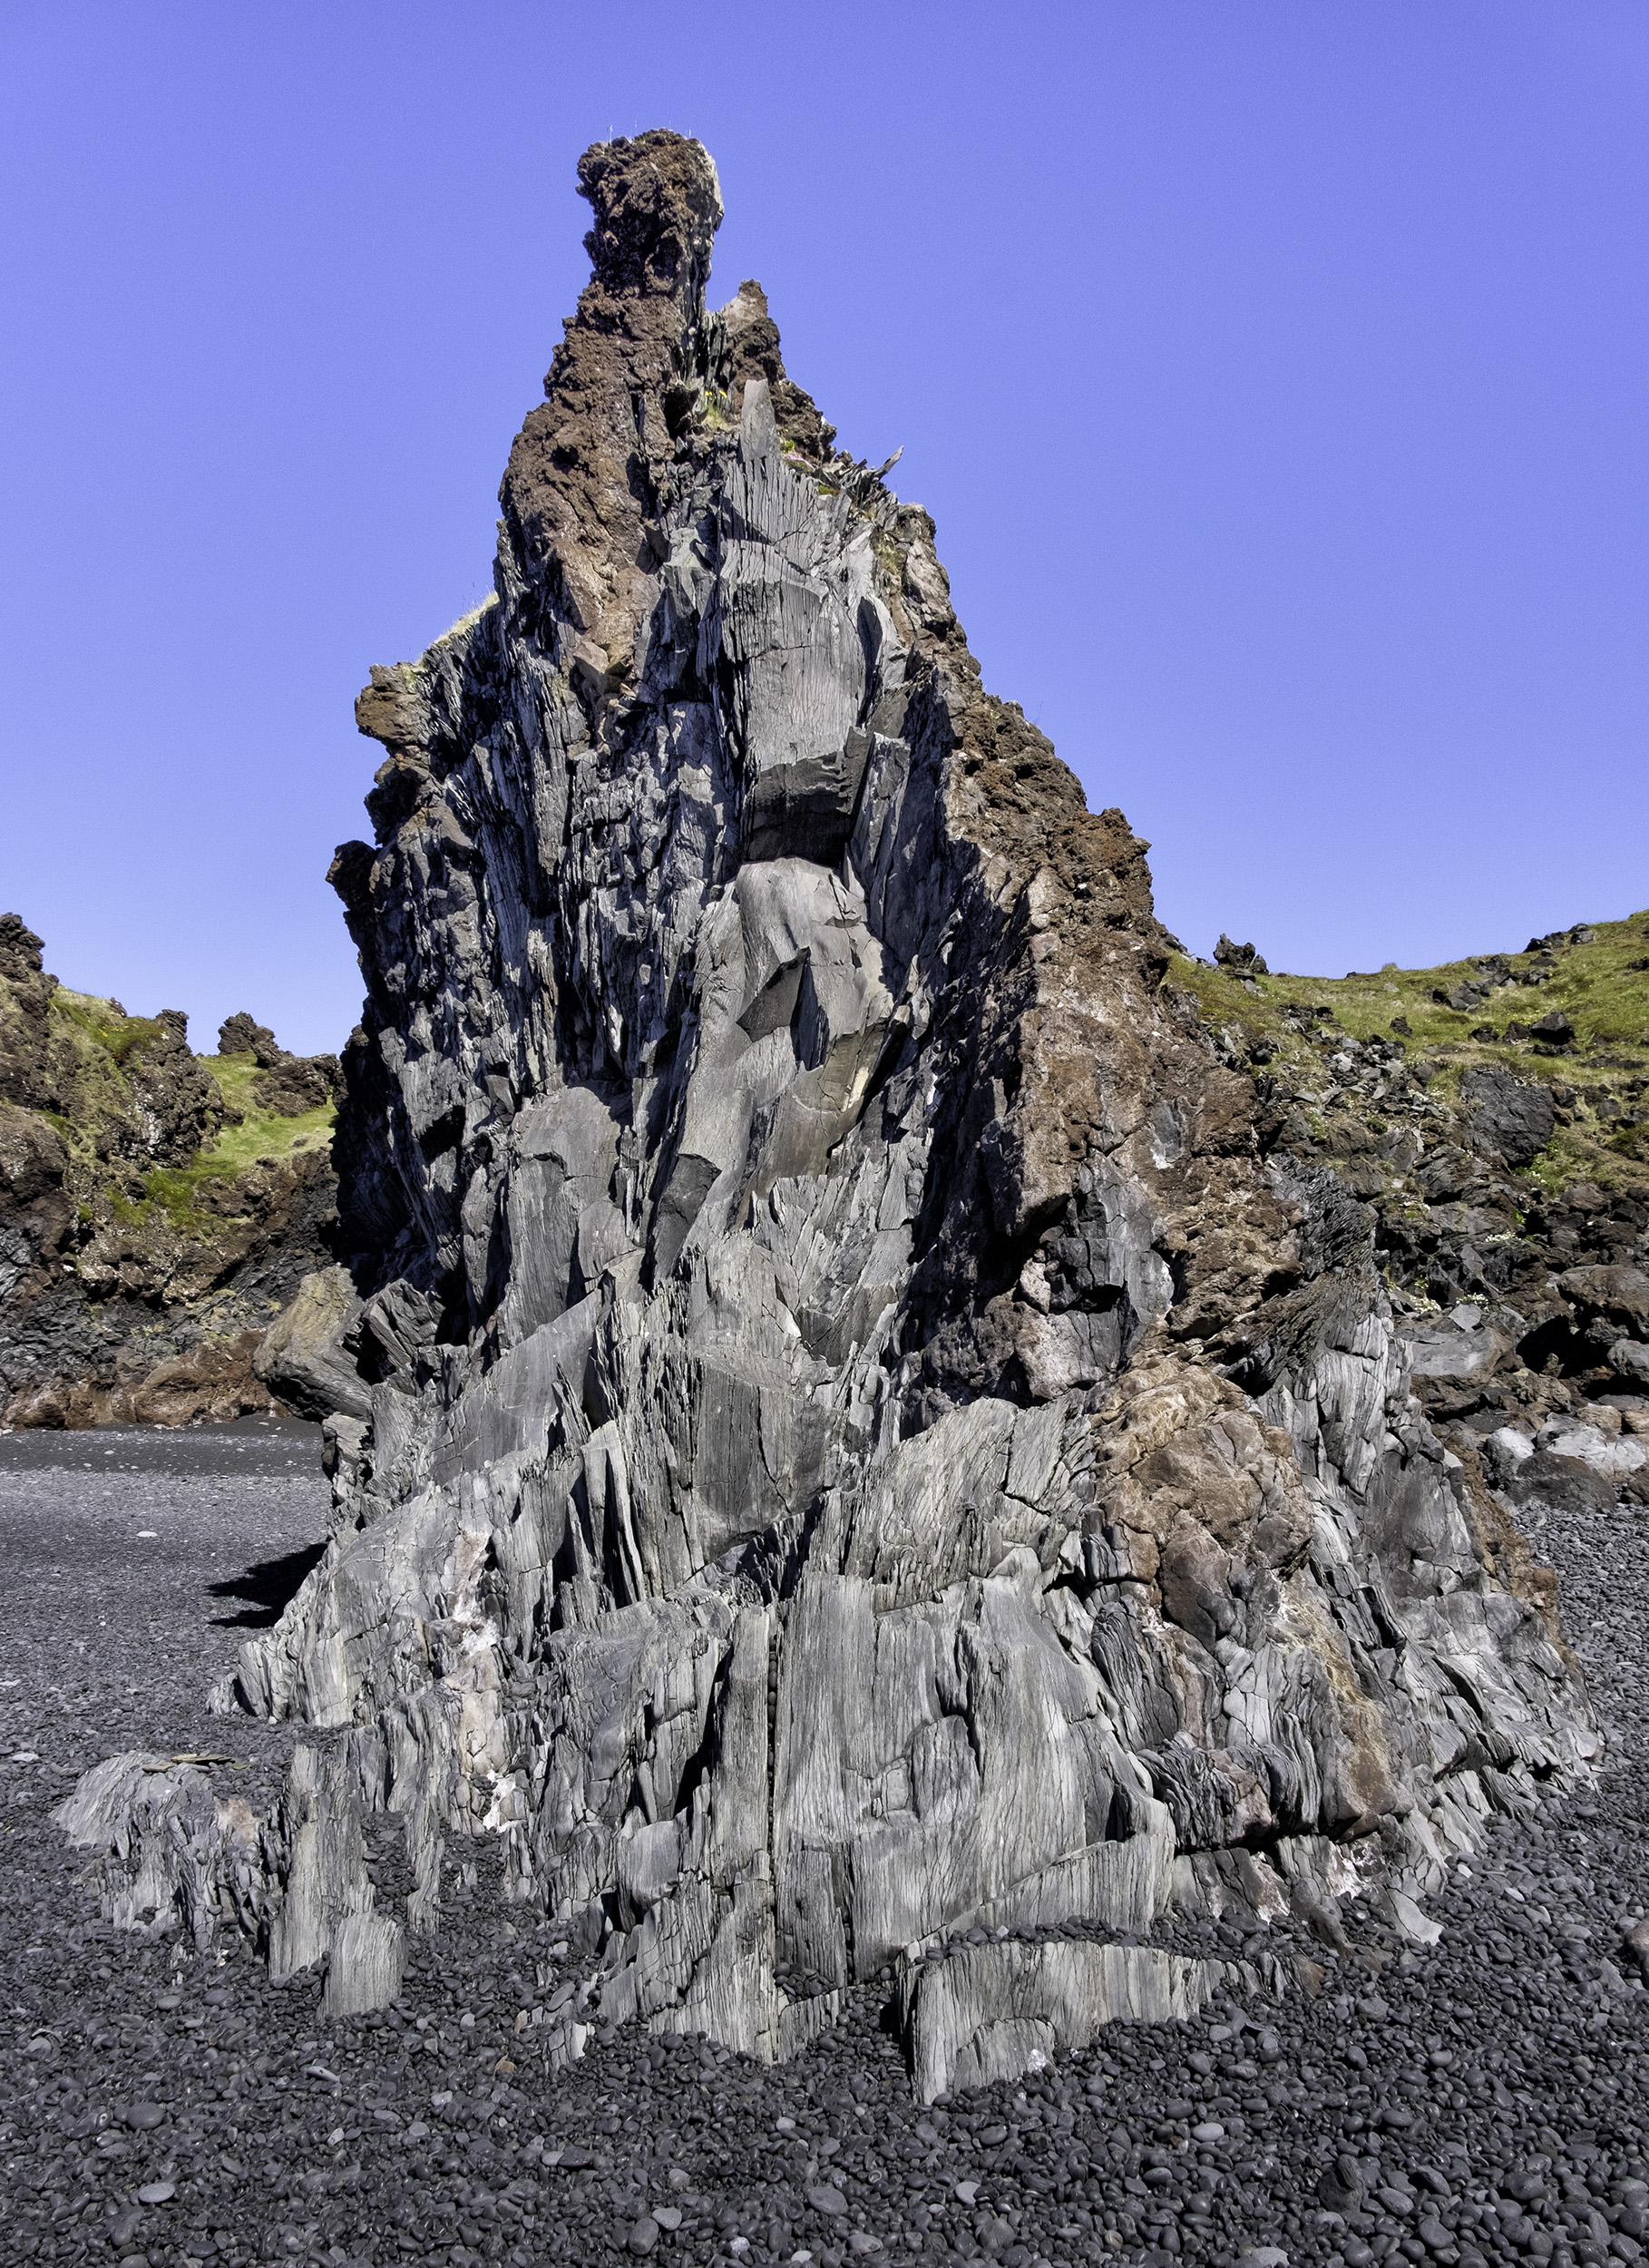 Volcanic Formations at Dritvik Djúpalónssandur